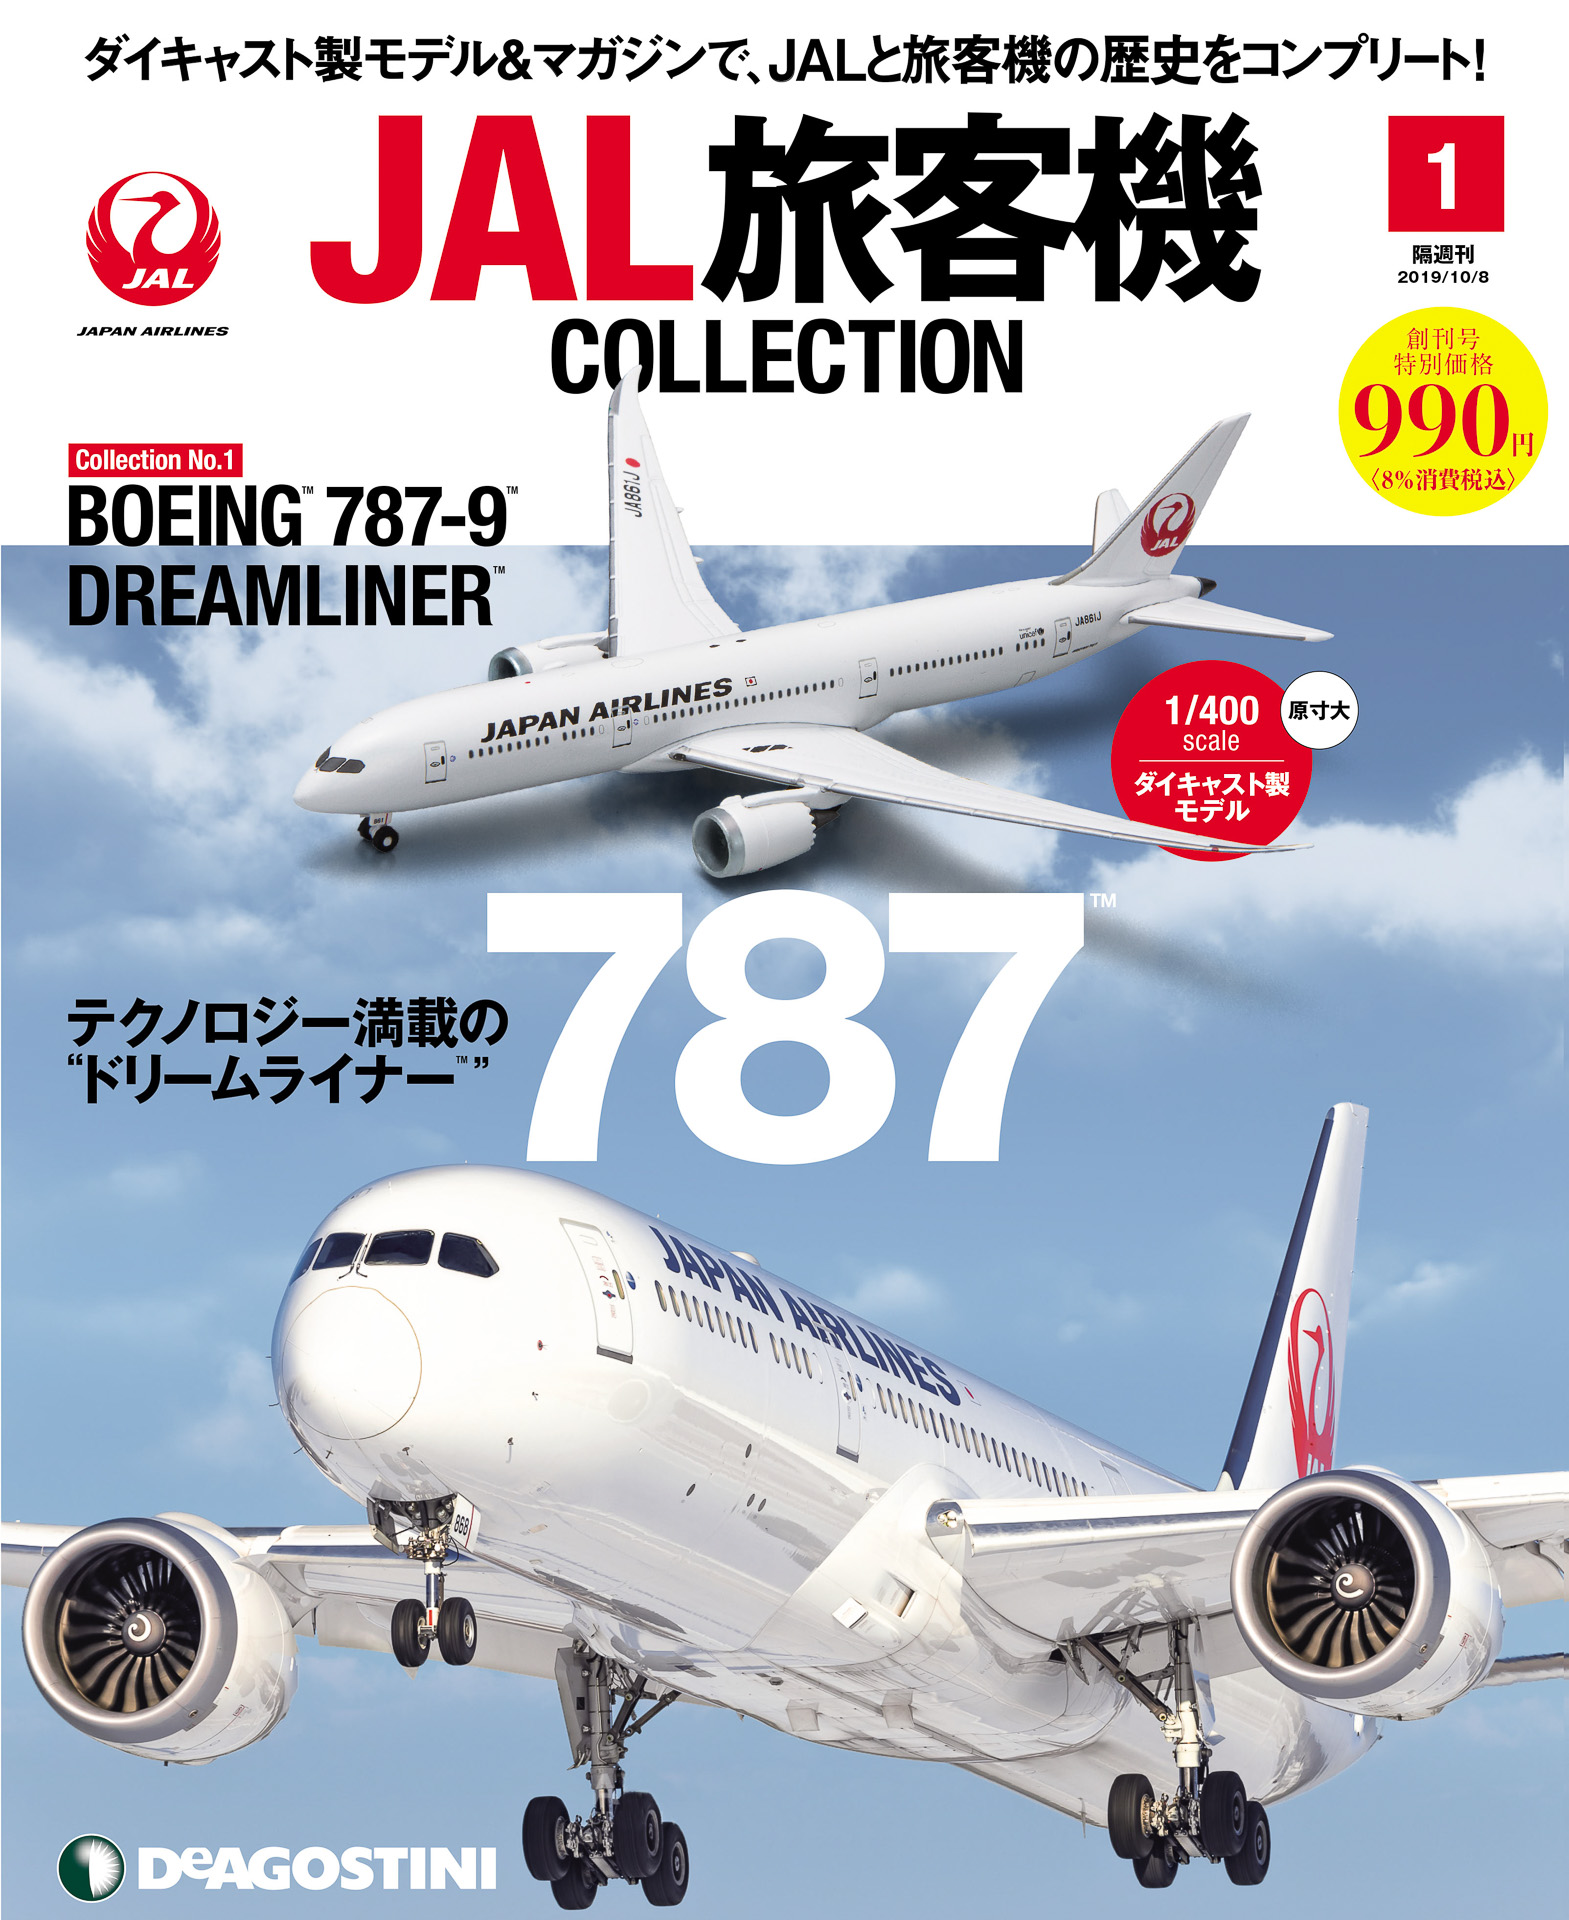 JALUX、デアゴスティーニ「JAL旅客機コレクション」を羽田空港や 